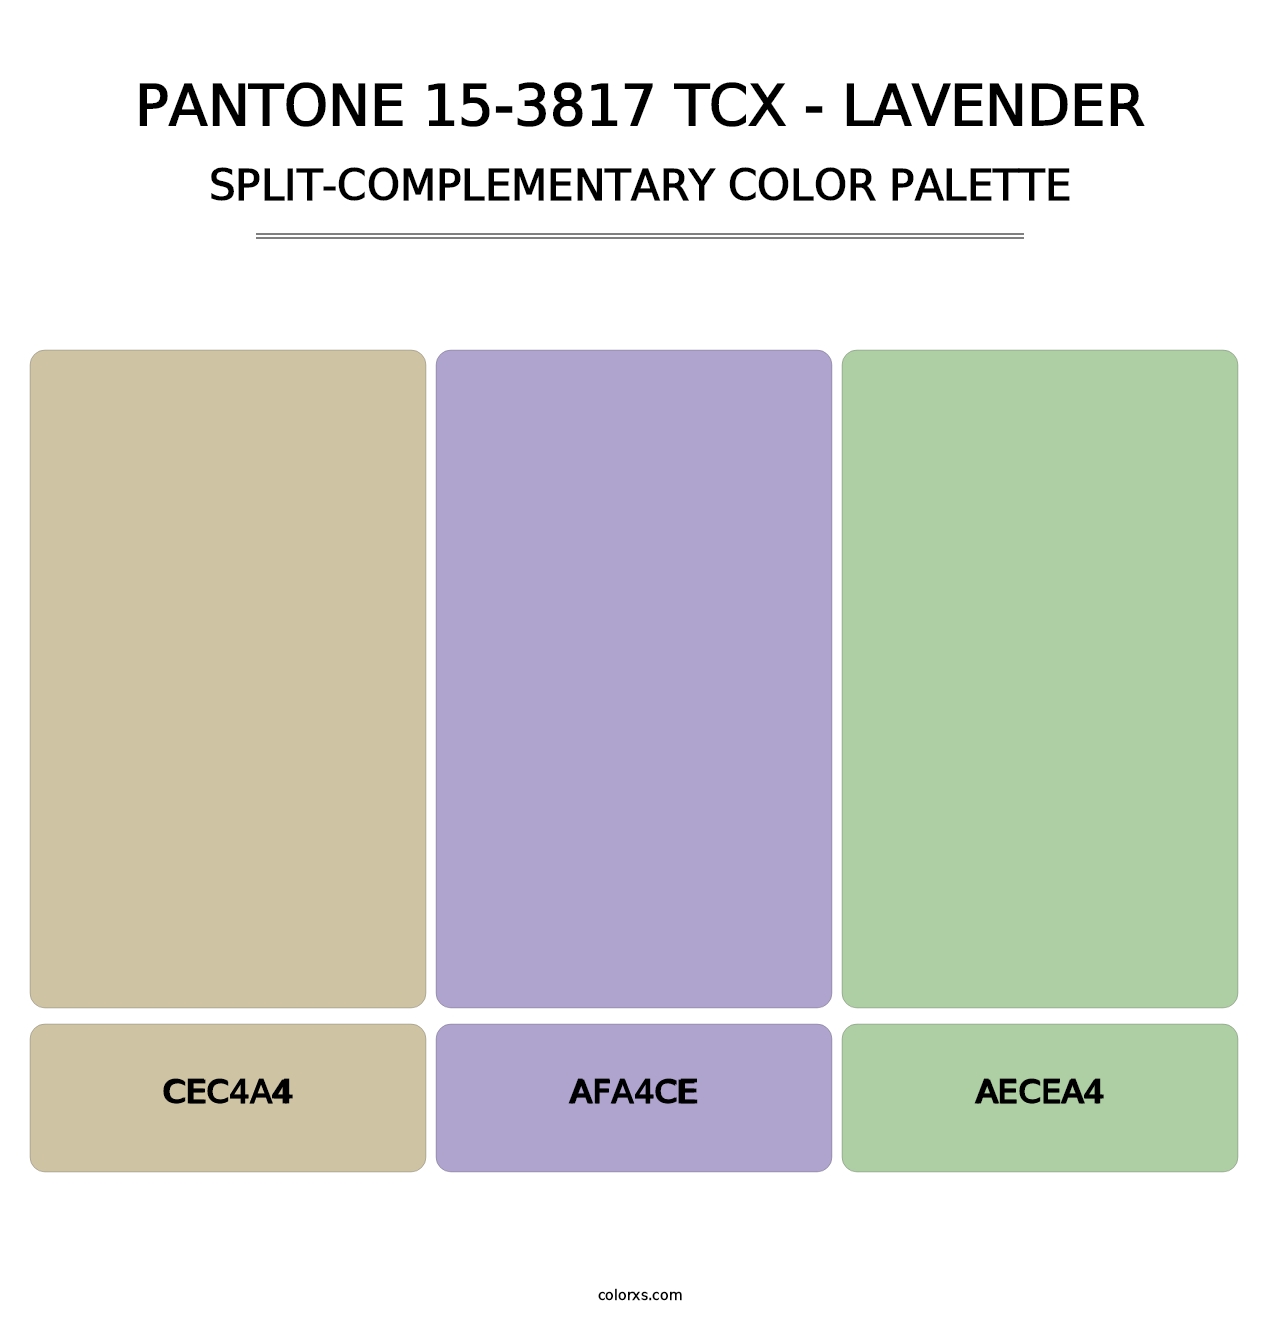 PANTONE 15-3817 TCX - Lavender - Split-Complementary Color Palette